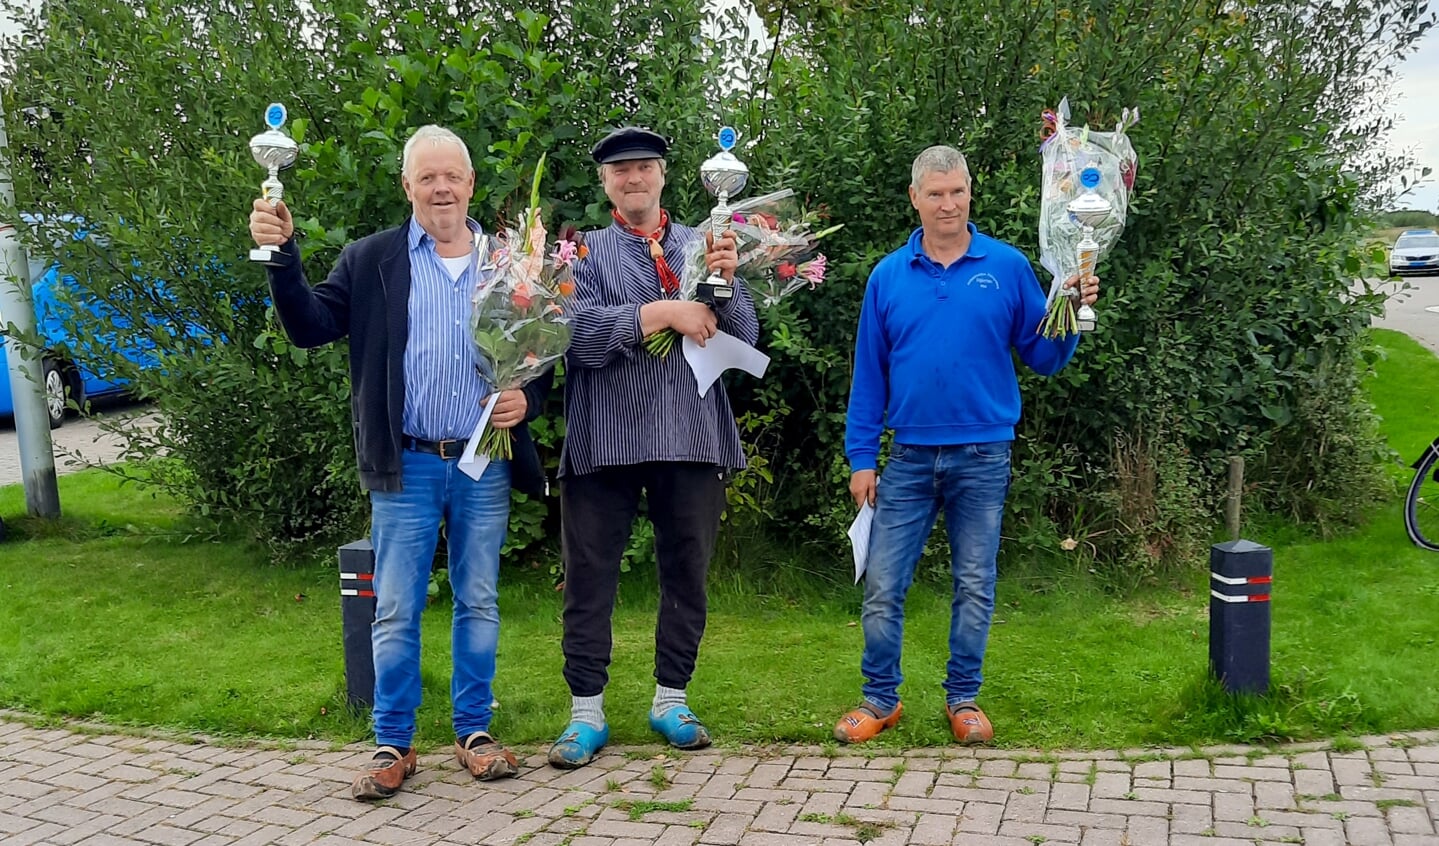 De winnaars: Wietse van der Meer (3), Dicky de Haan (1) en Sip Dijkman (2).